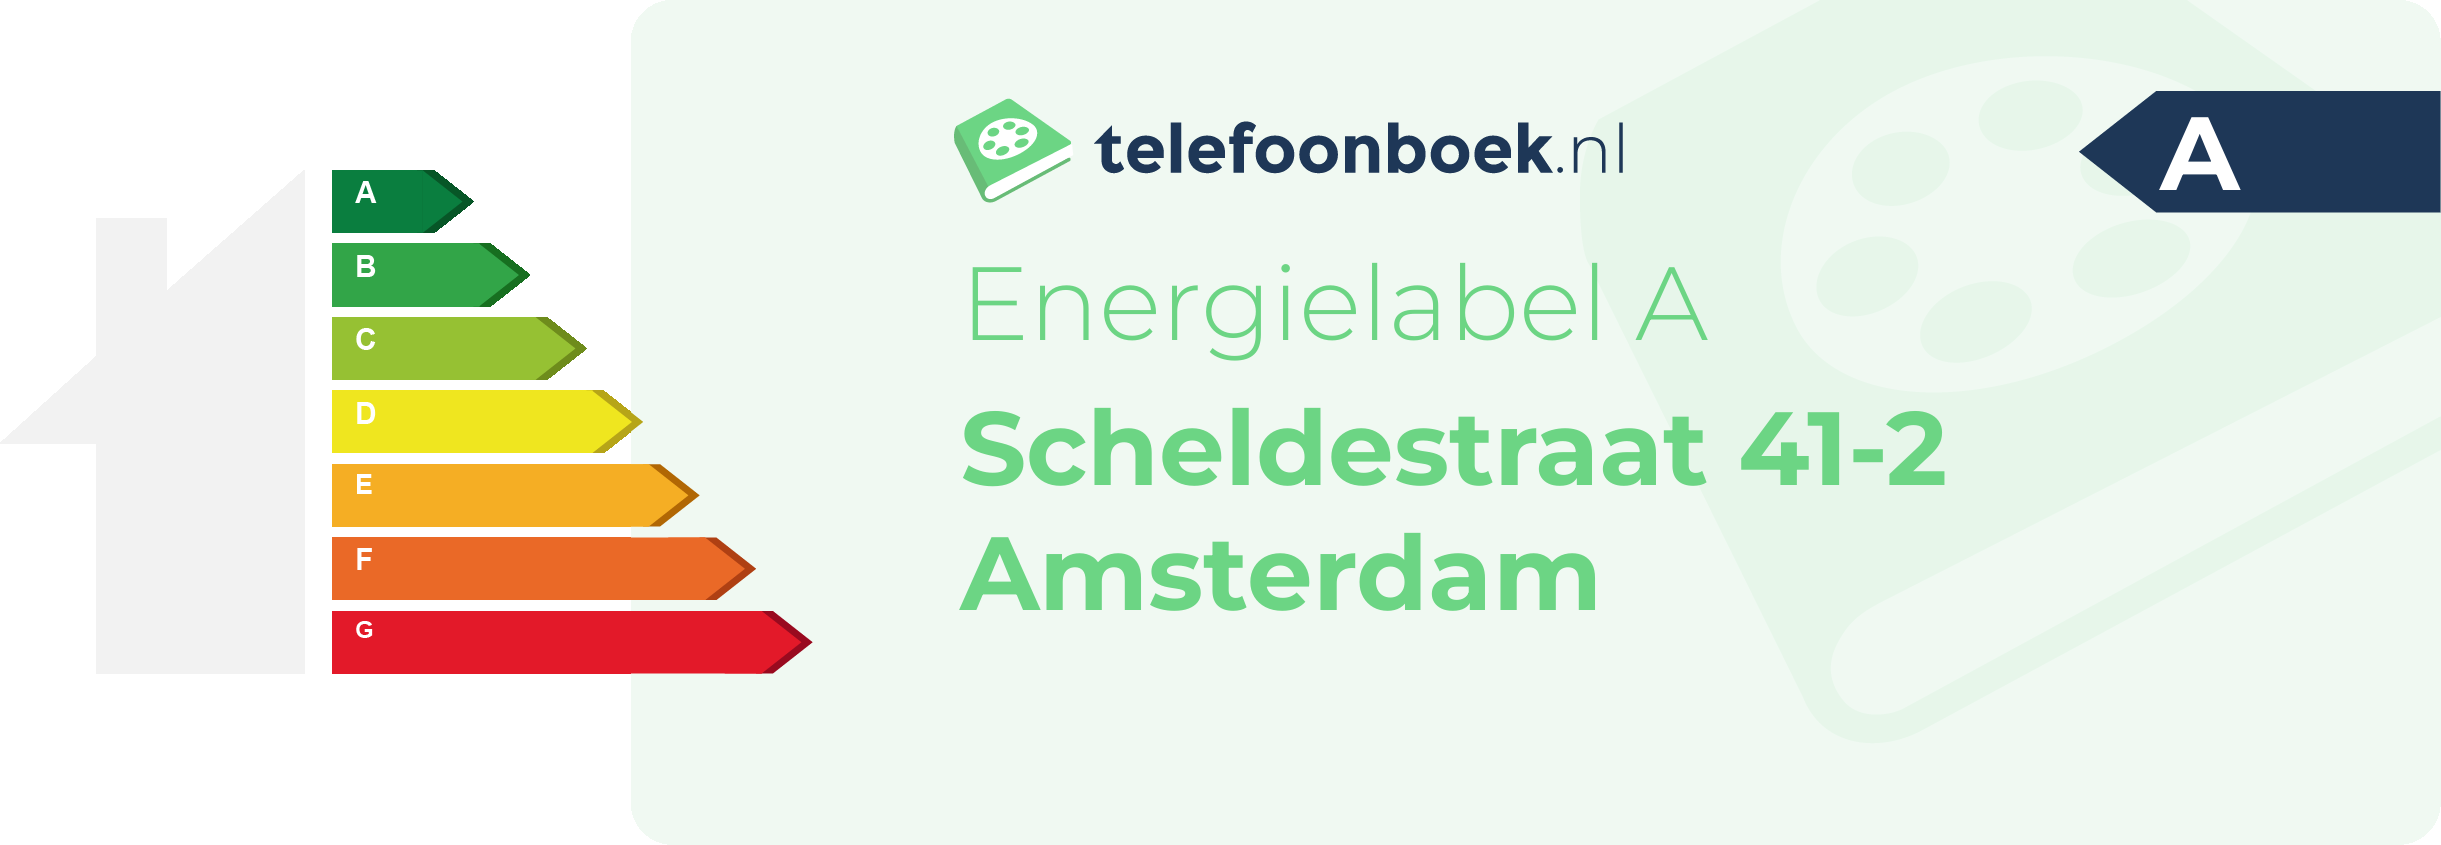 Energielabel Scheldestraat 41-2 Amsterdam